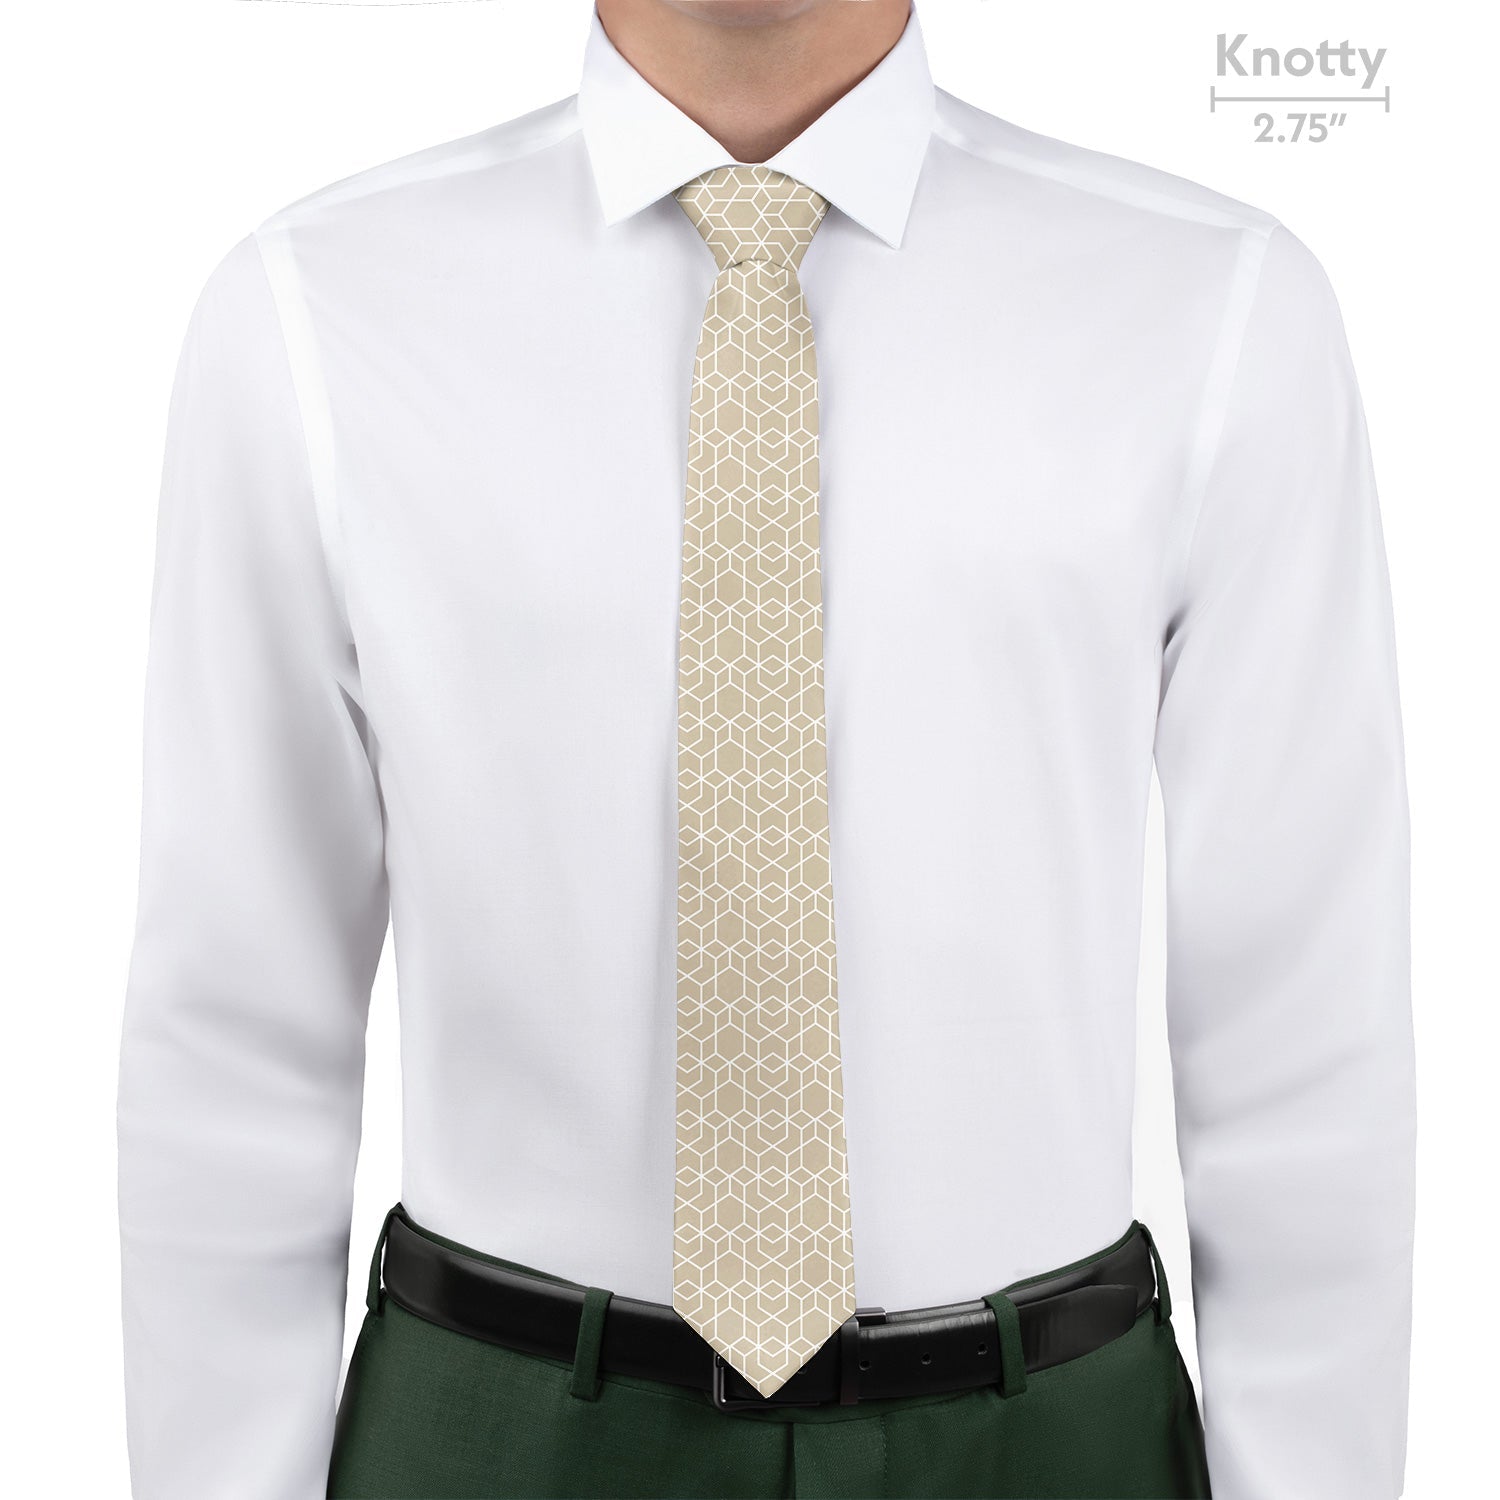 Crystalline Geometric Necktie - Knotty - Knotty Tie Co.